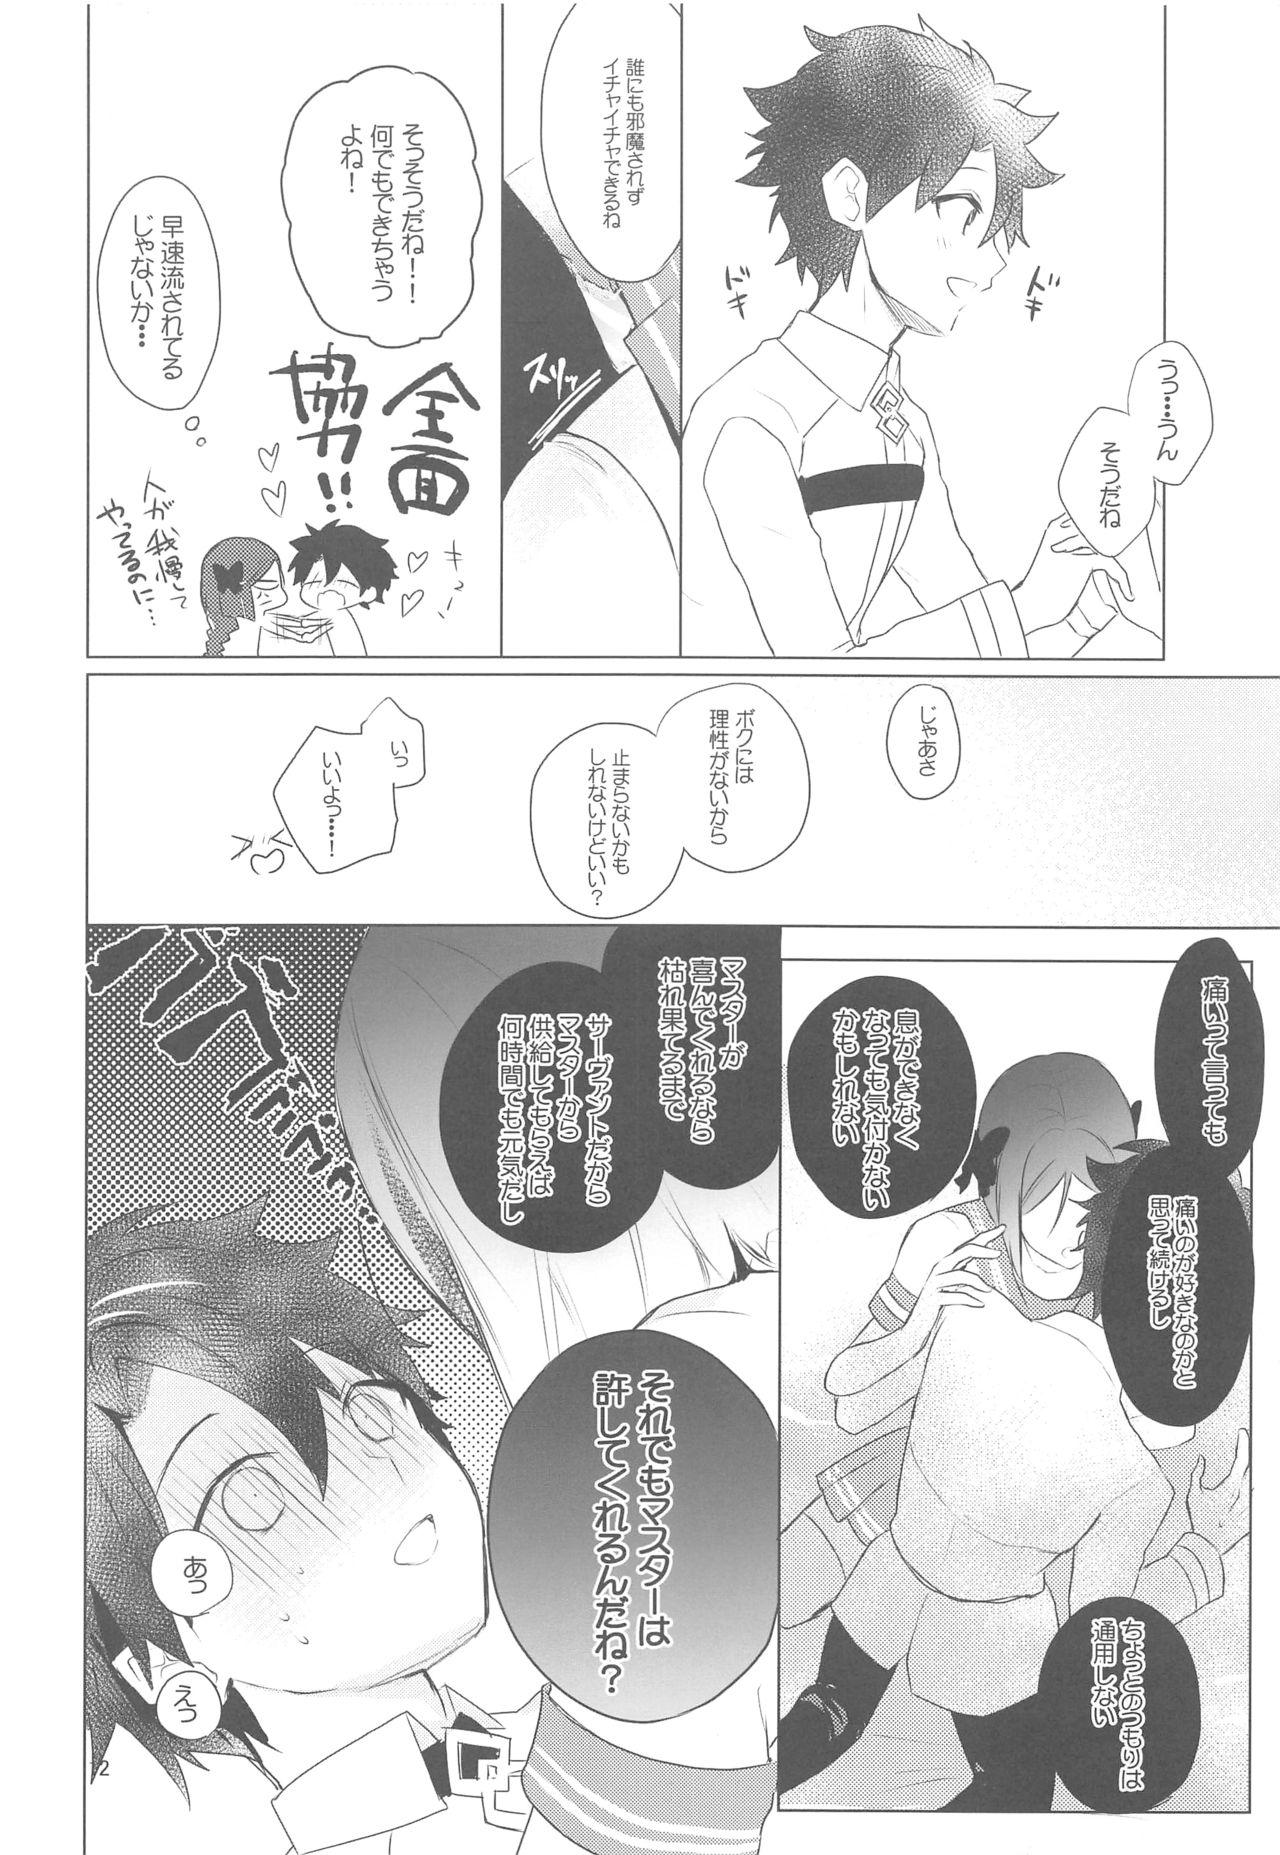 Safado Hoshi 4 Servant ga Eraberu tte Iukara Kakugo Kimeru Mae ni Waver-chan ni o Aite Shite Moratta Hanashi - Fate grand order Couch - Page 11